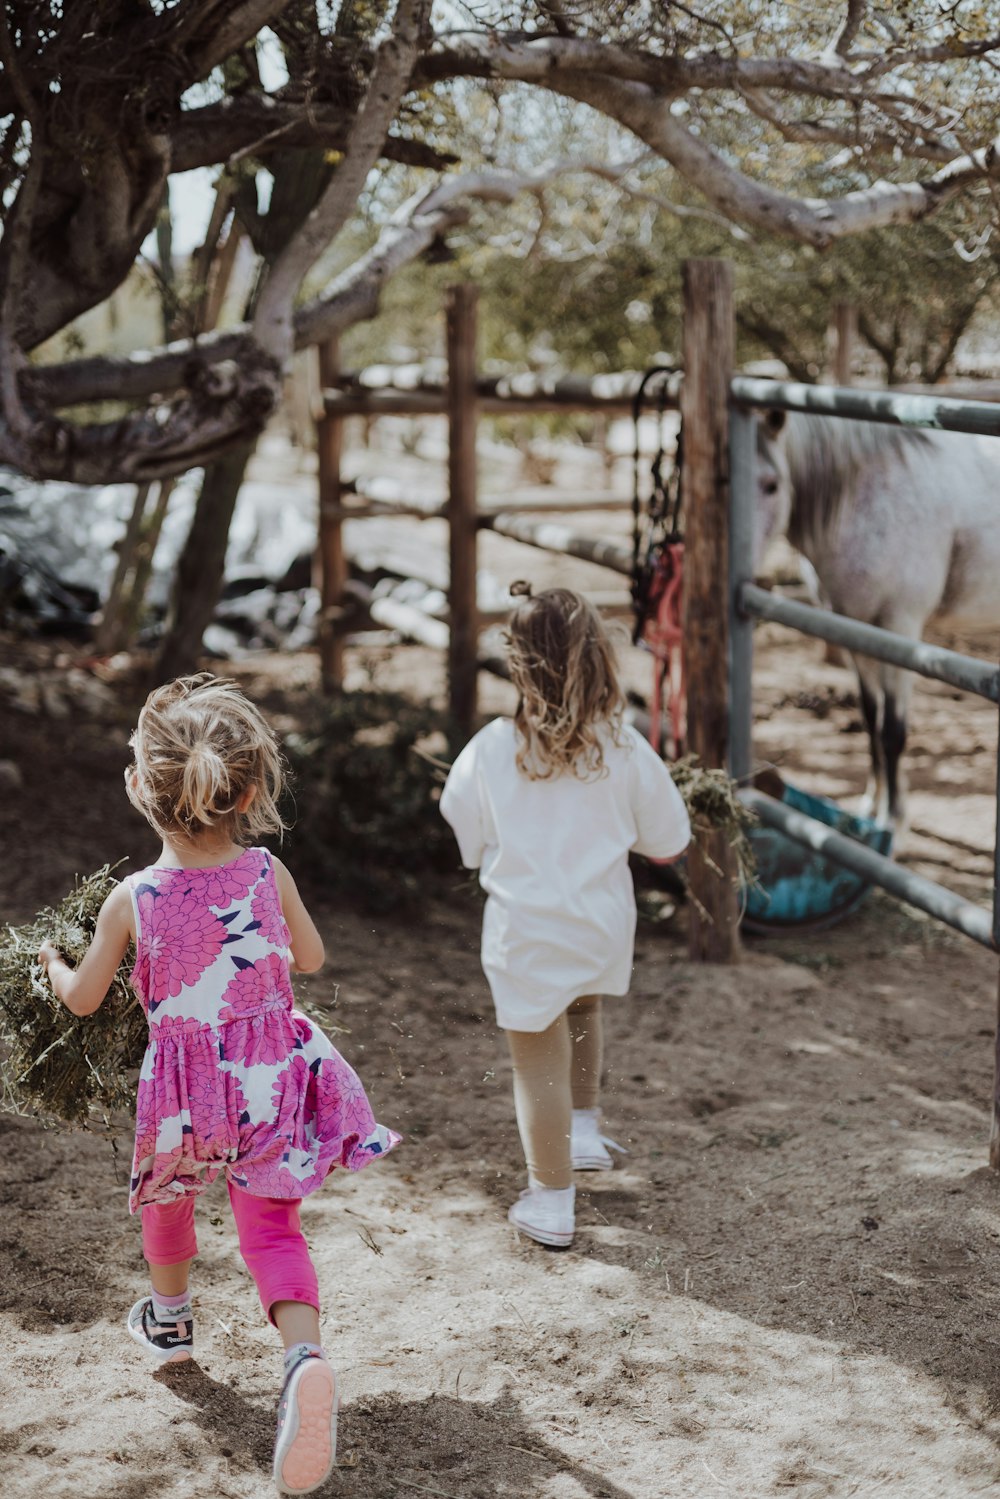 フェンスで囲まれたエリアで馬に向かって歩く2人の少女